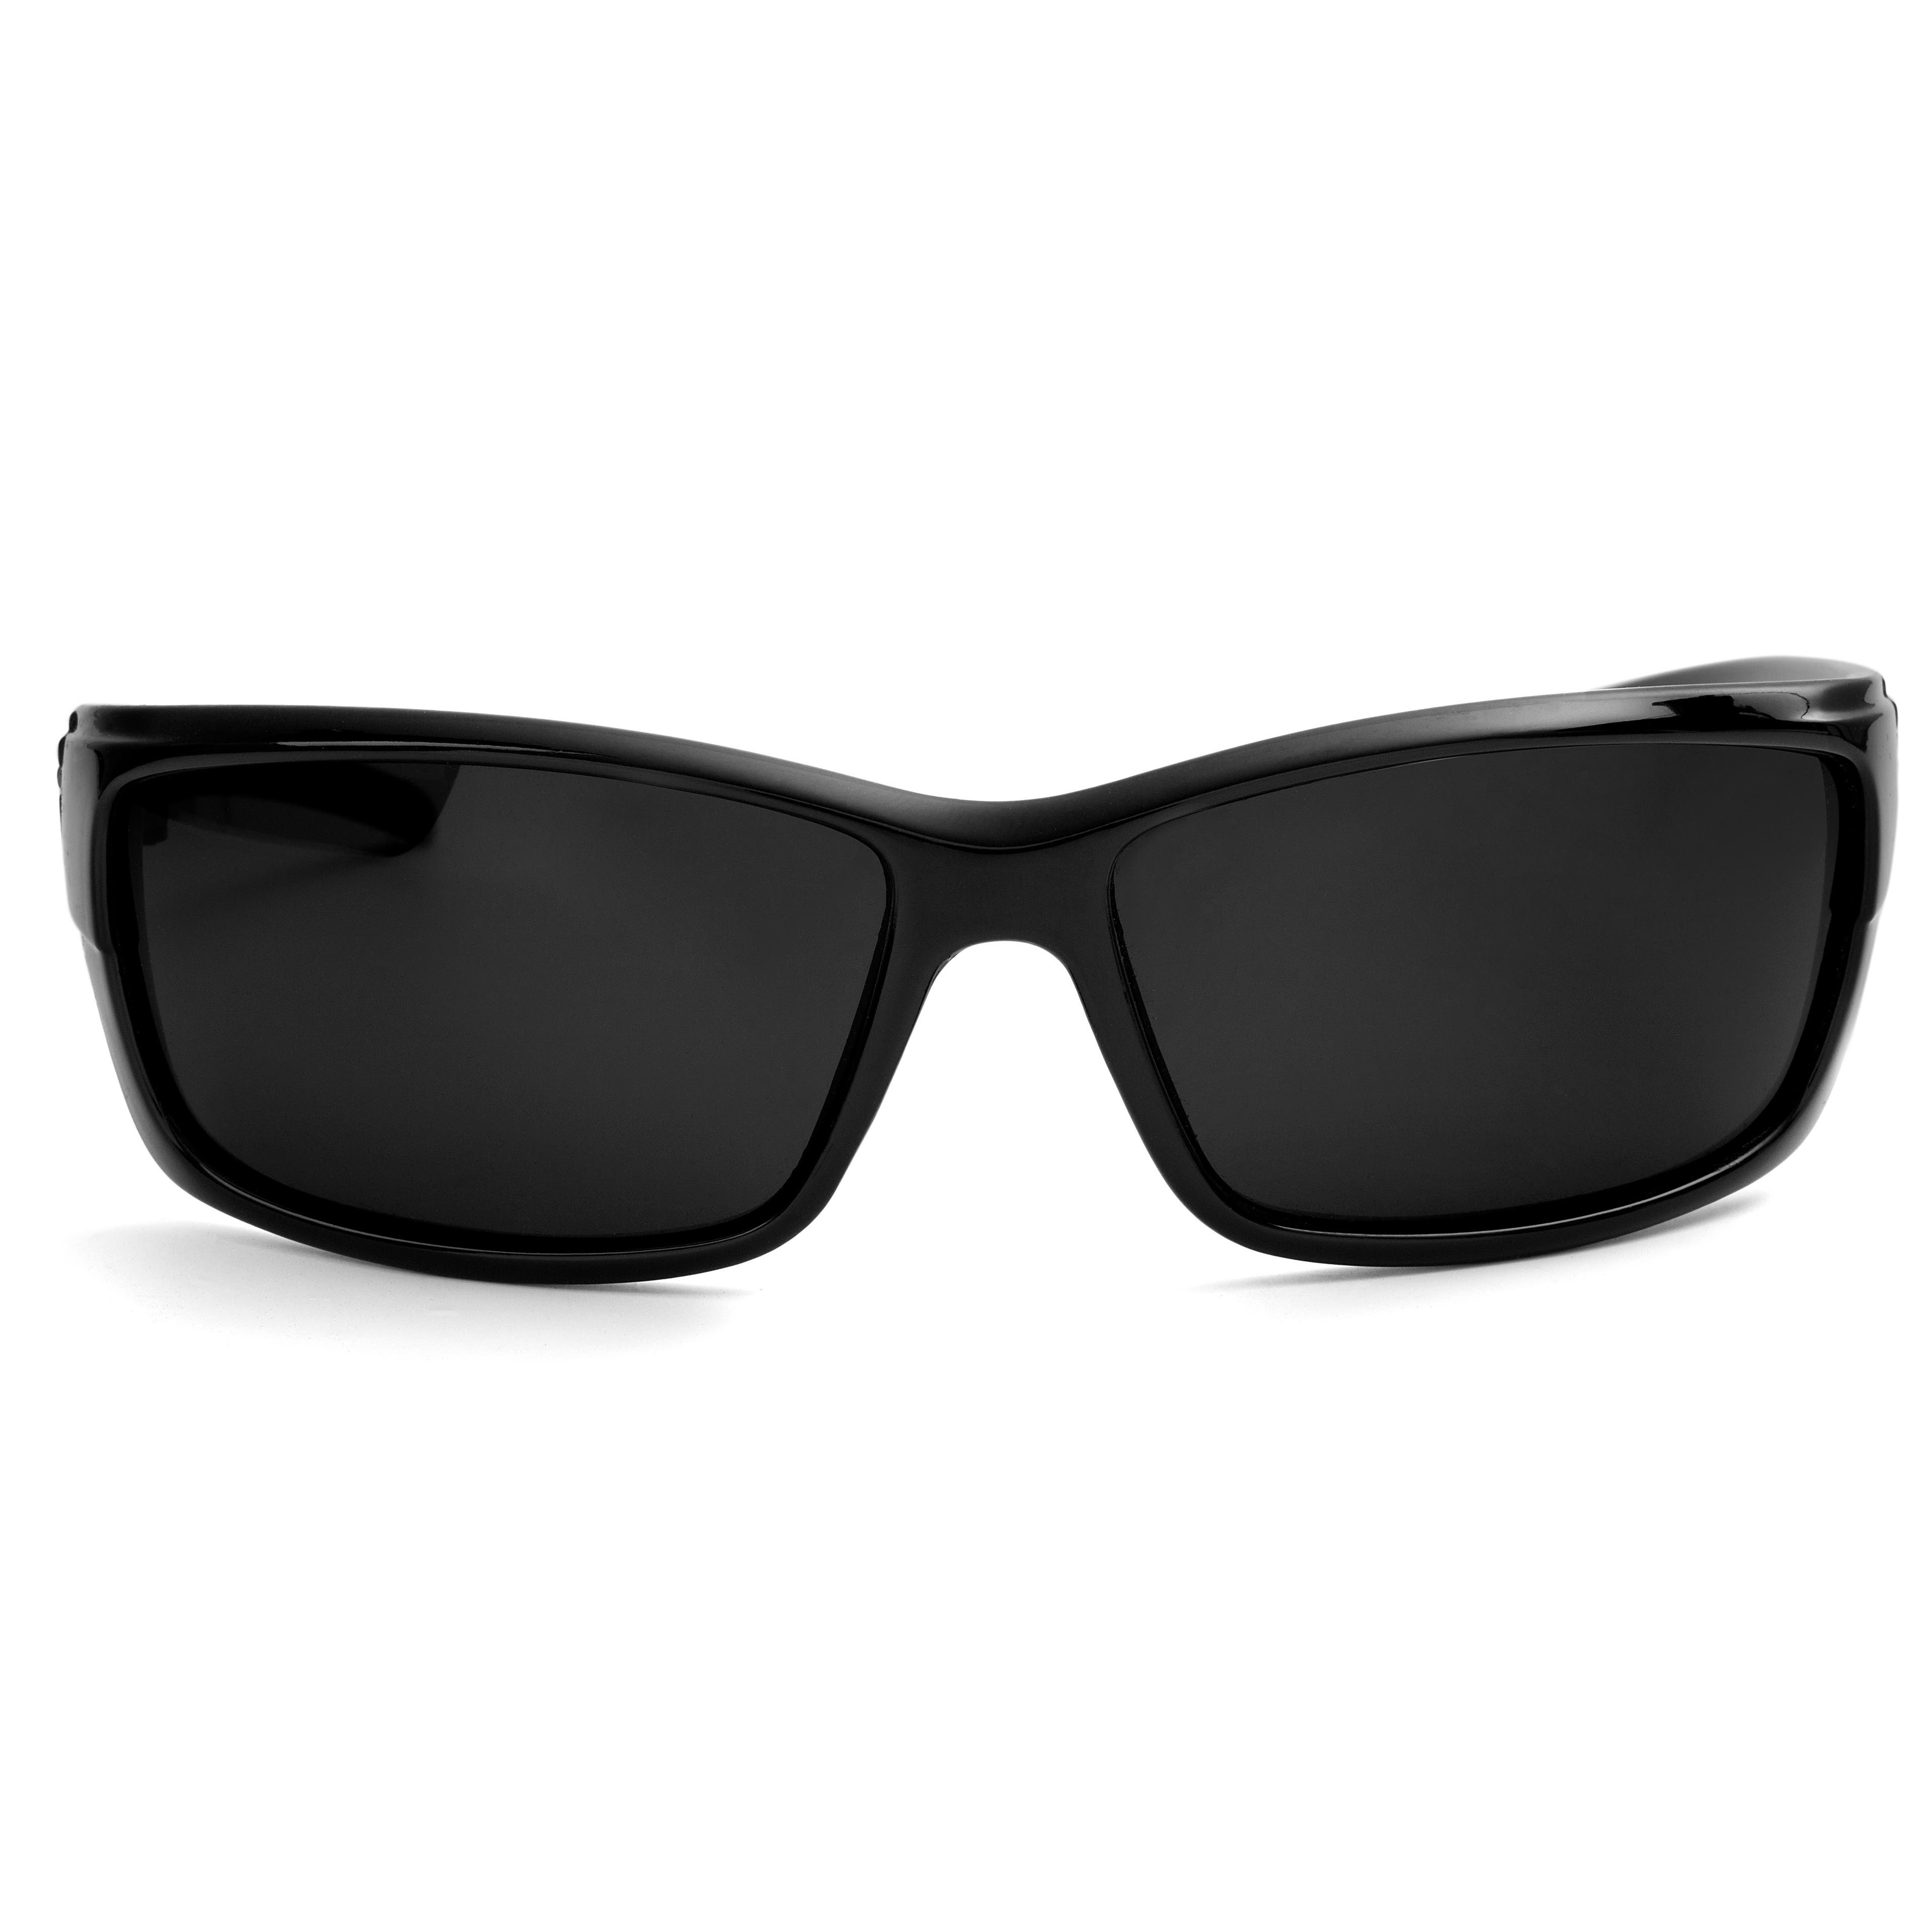 Fekete, sportos napszemüveg füstös polarizált lencsével